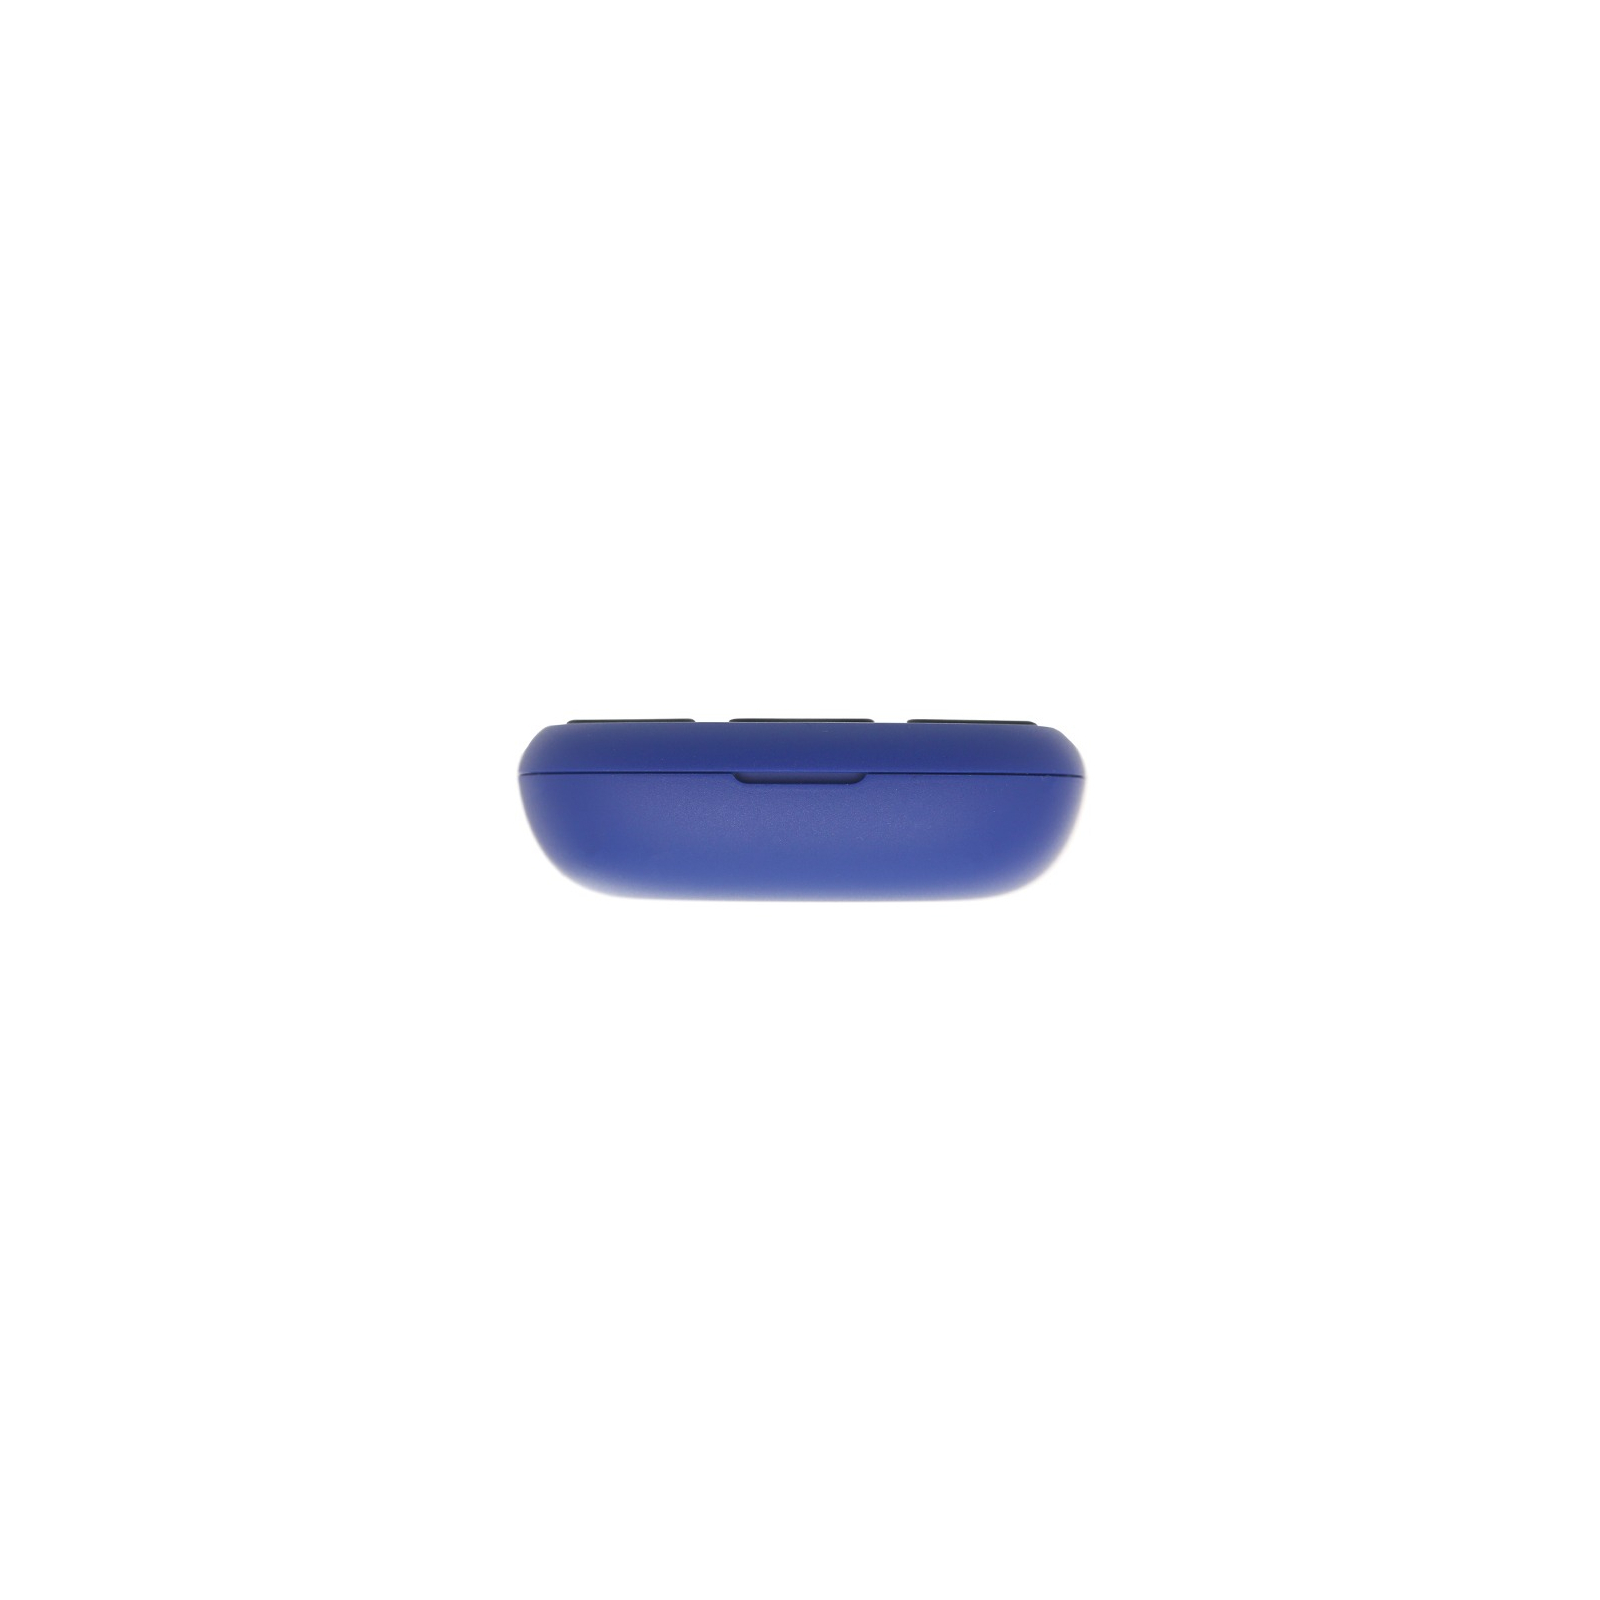 Мобильный телефон Nokia 105 DS 2019 Blue (16KIGL01A01) изображение 5